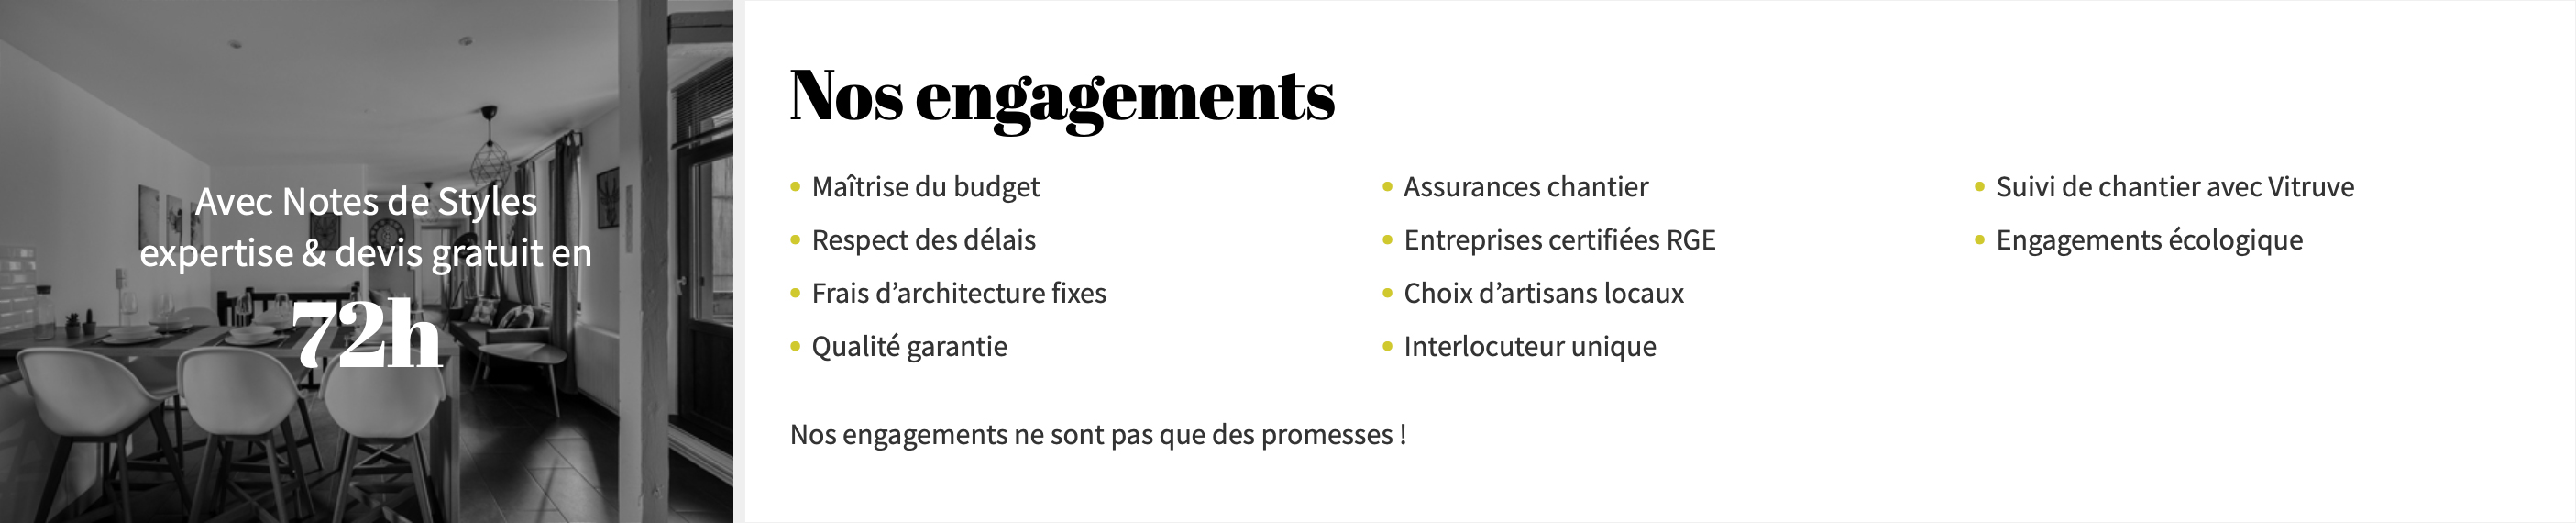 Notes de Styles Villefranche-sur-Mer - Nos engagements